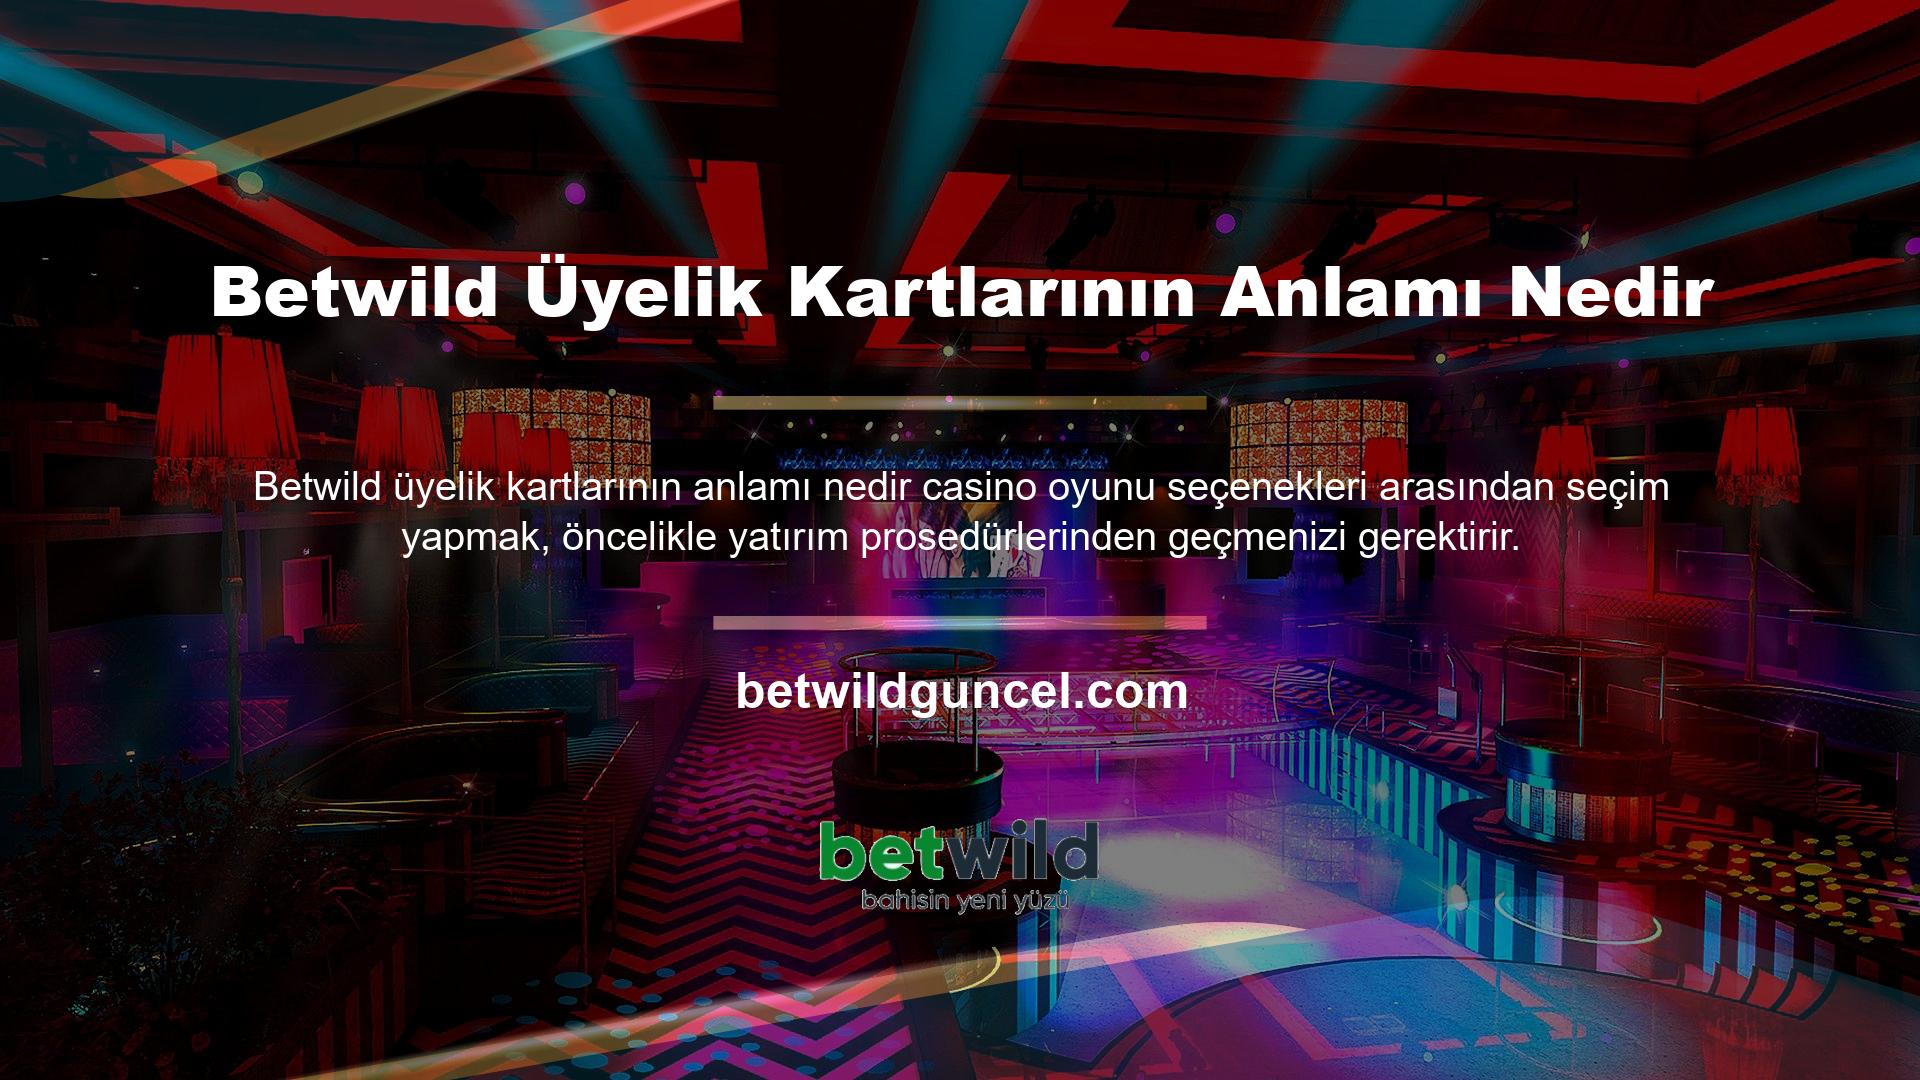 Bahis yapmaktan hoşlanan ve Betwild casinodaki yatırım seçenekleri hakkında bilgi sahibi olan kişiler cevap arayışındadır